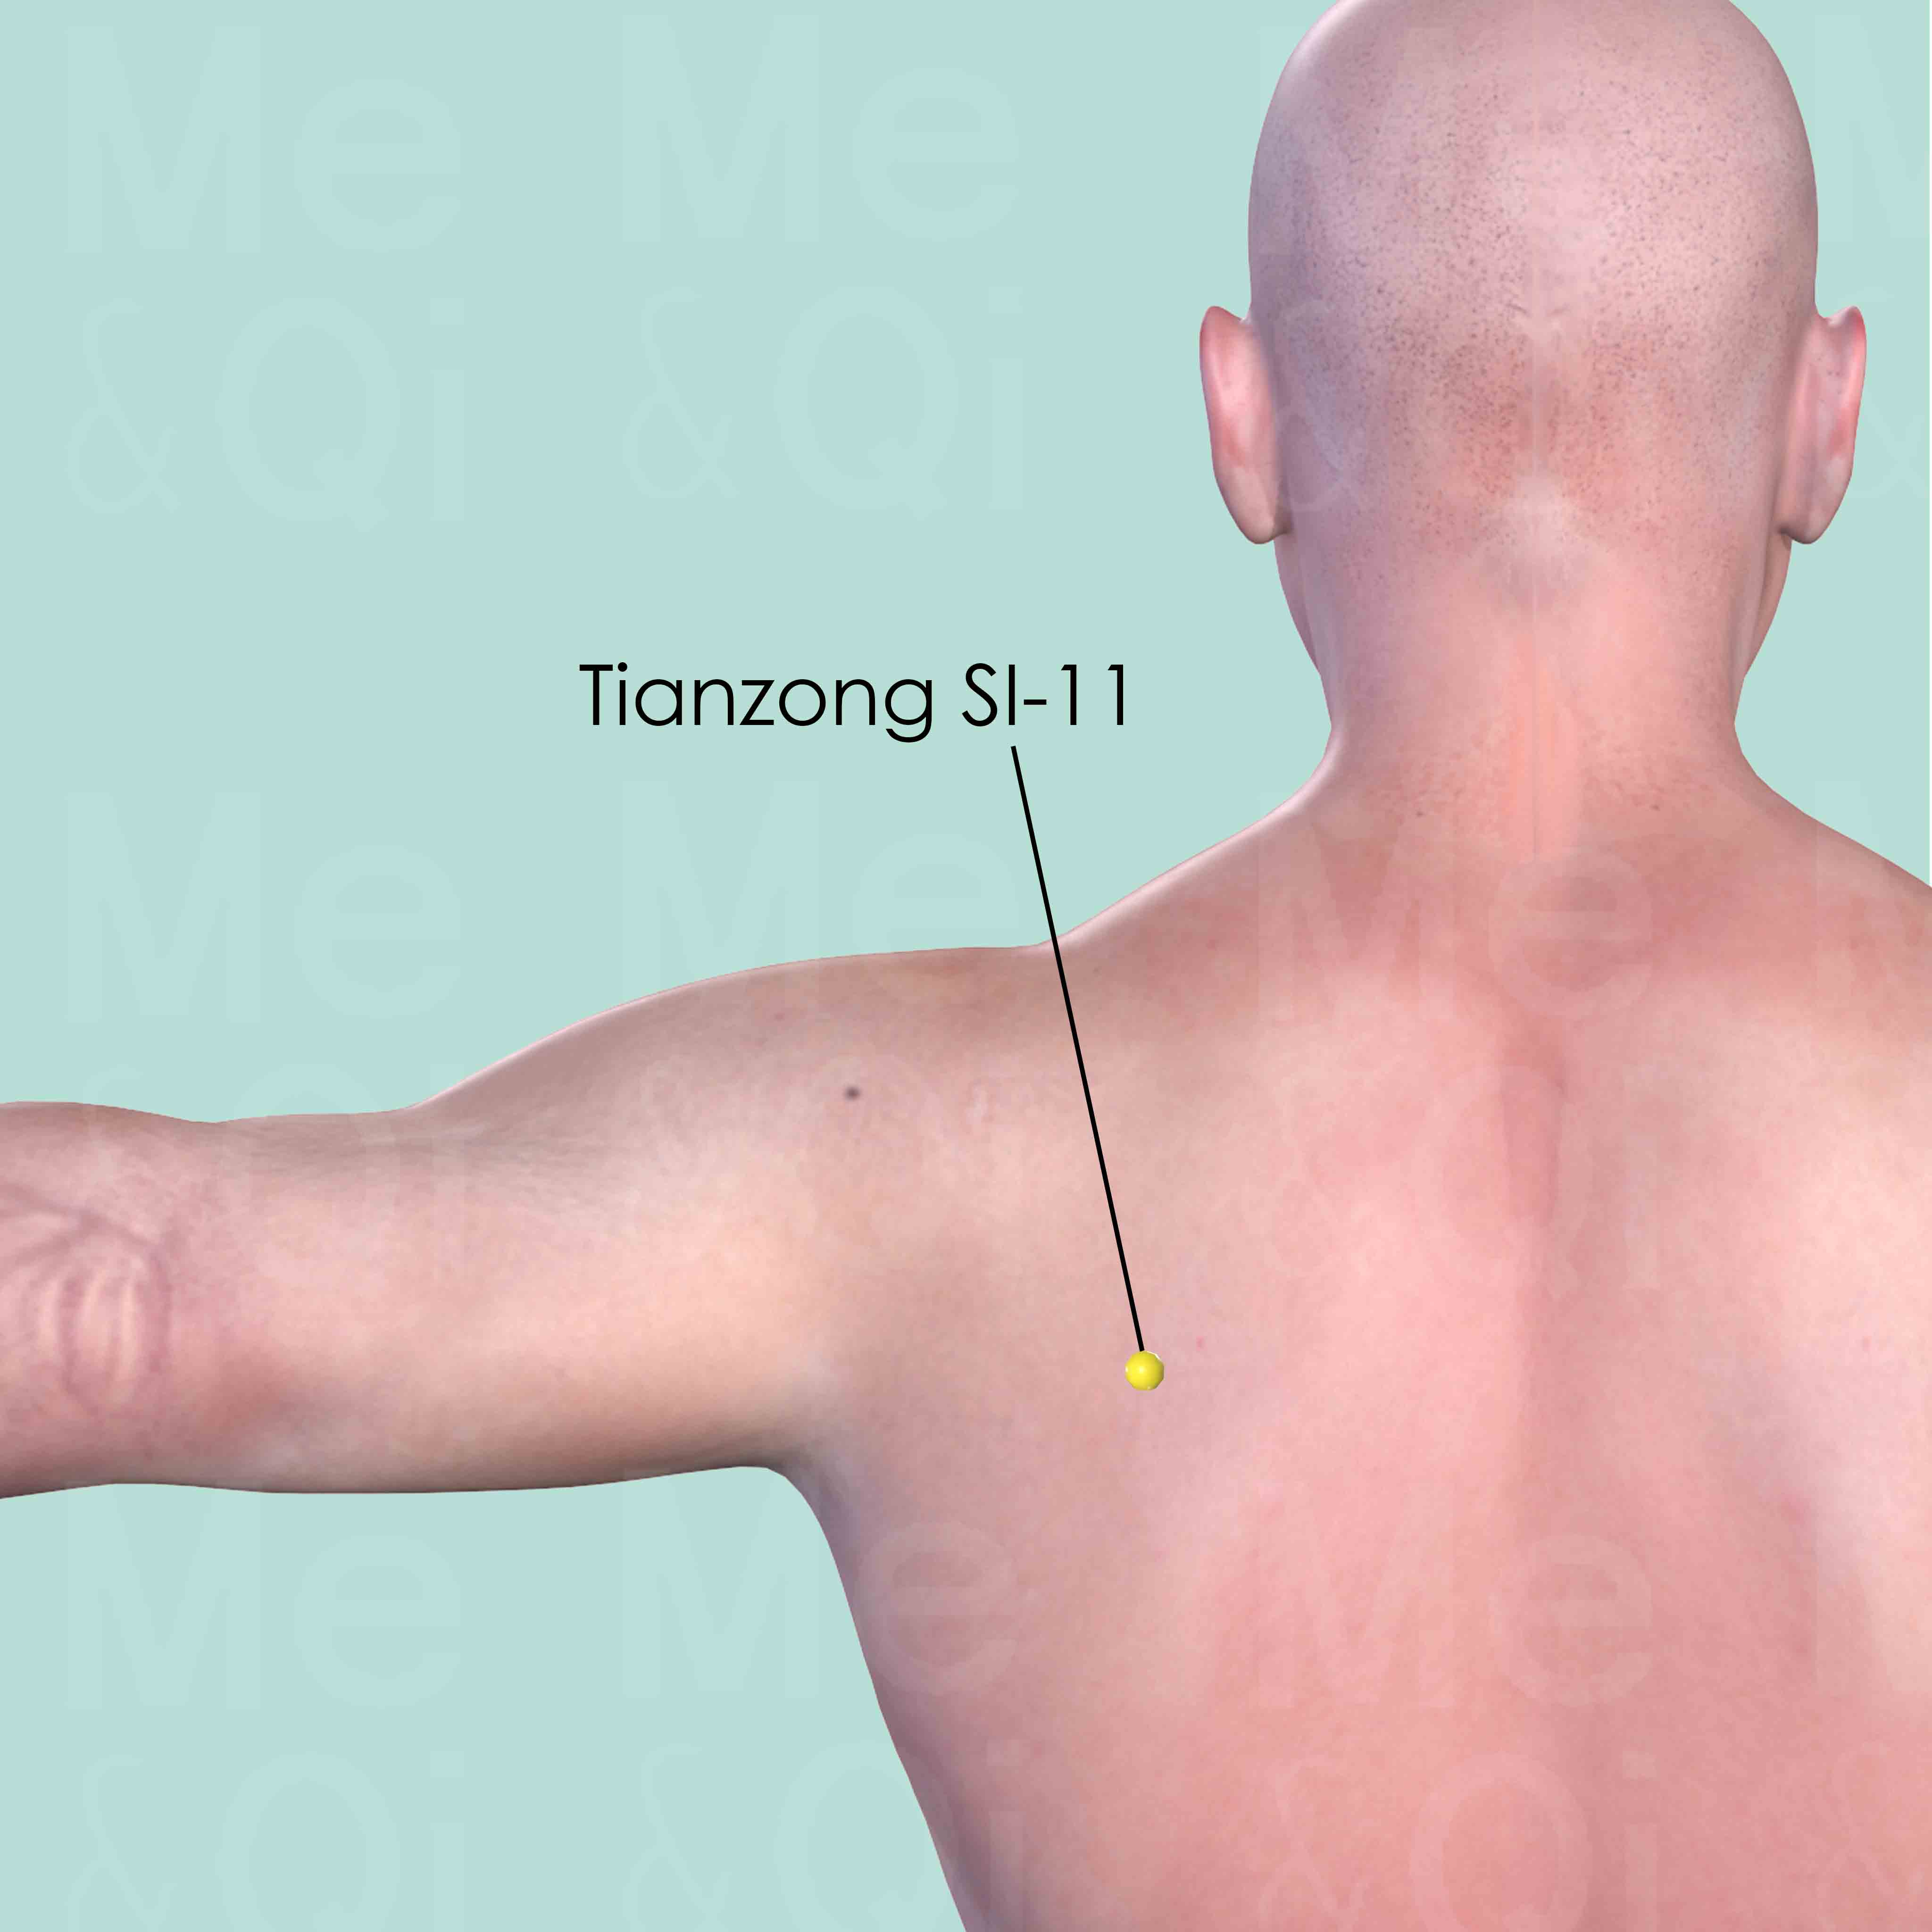 Tianzong SI-11